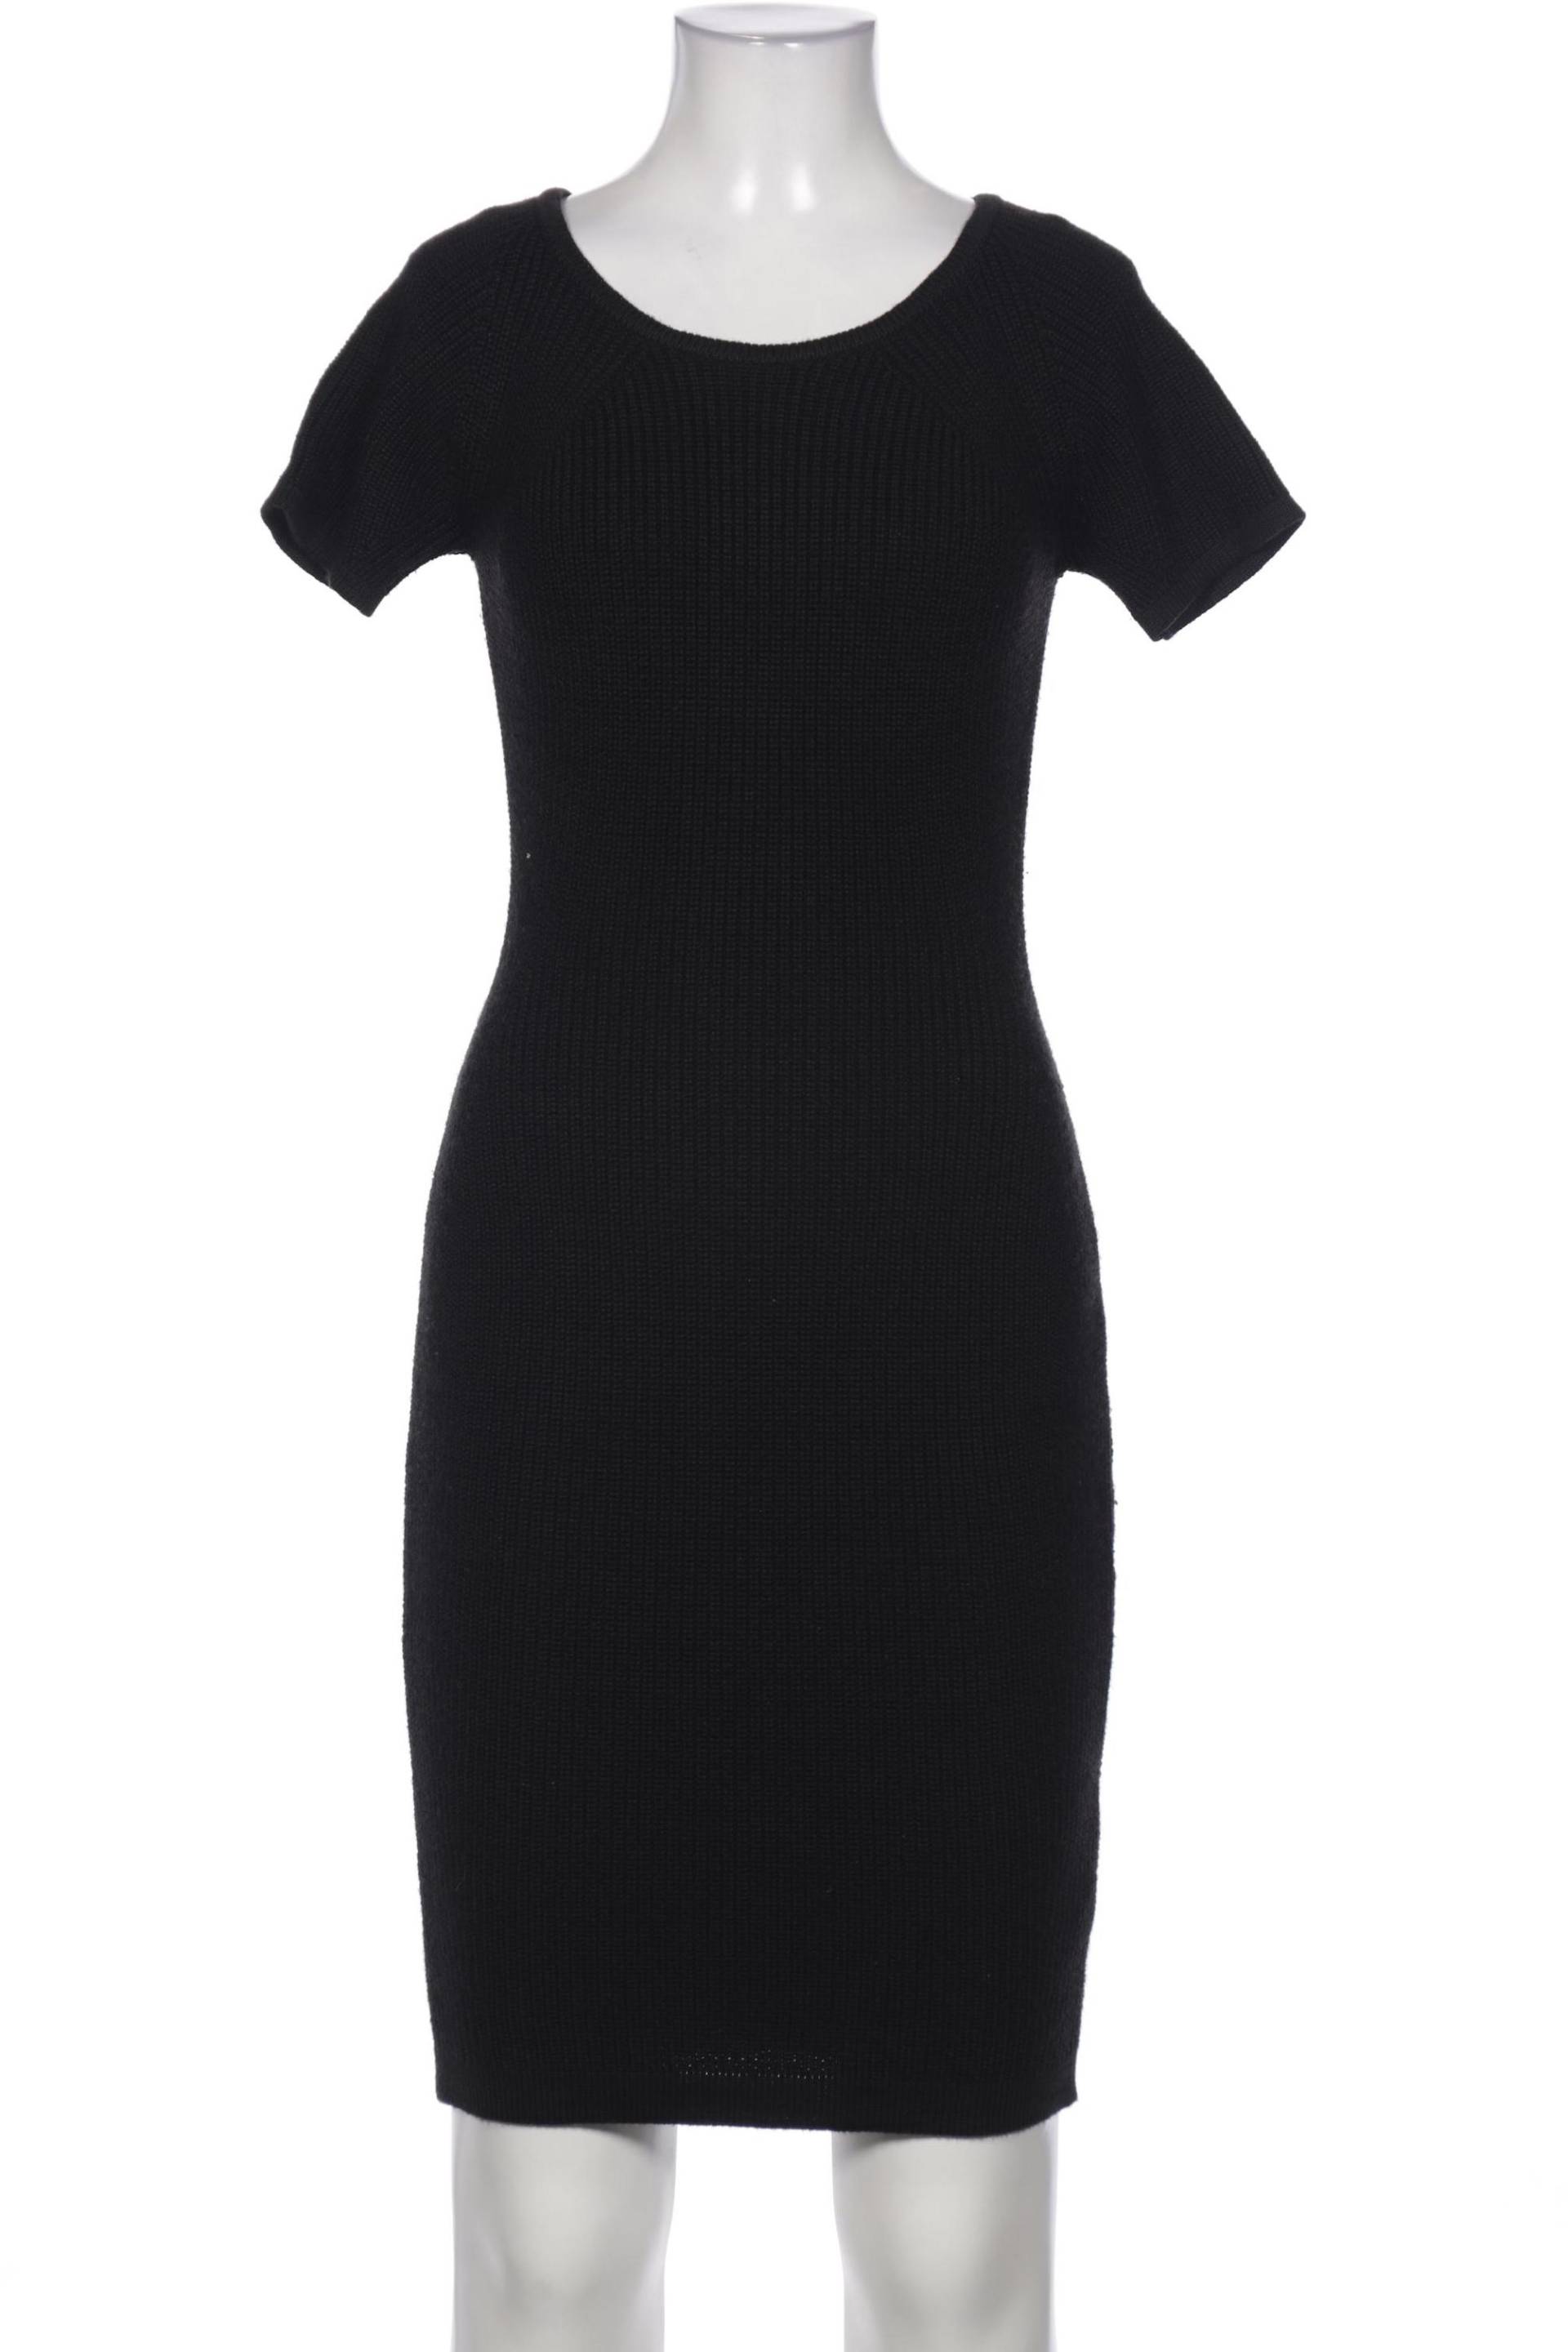 wunderwerk Damen Kleid, schwarz, Gr. 36 von wunderwerk